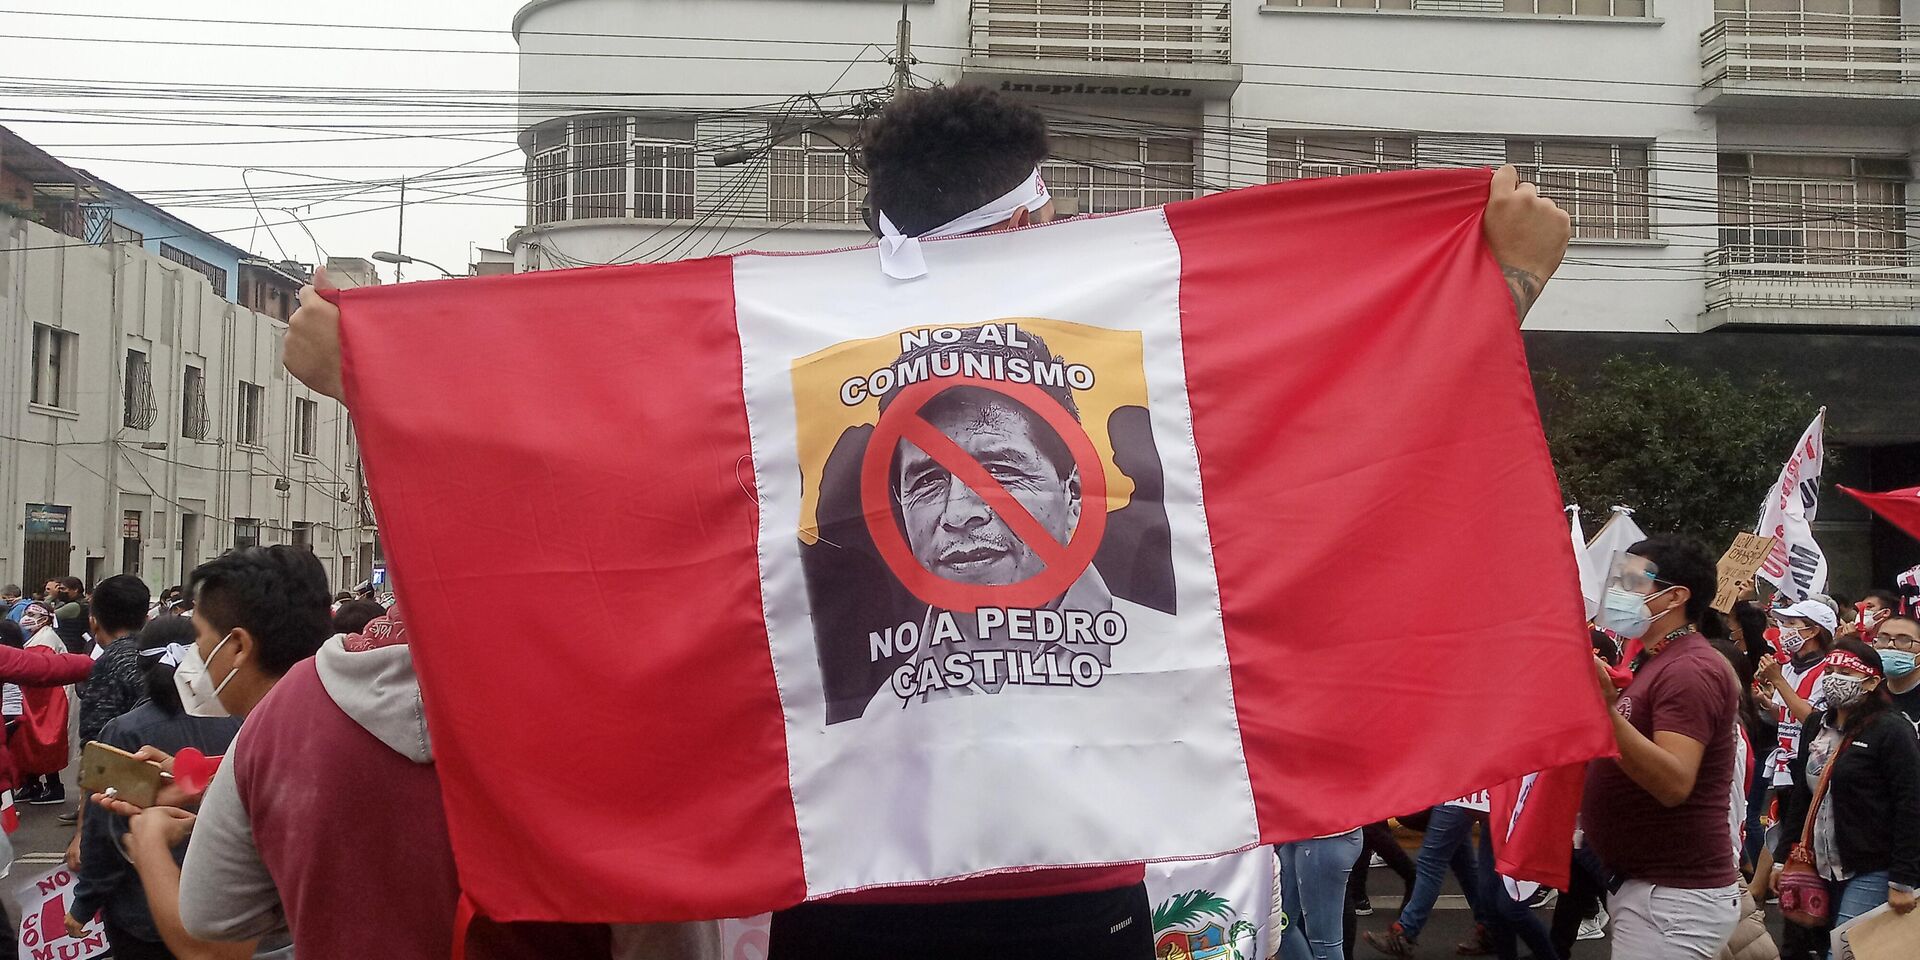 Marcha contra el comunismo y Castillo en Lima - Sputnik Mundo, 1920, 30.05.2021